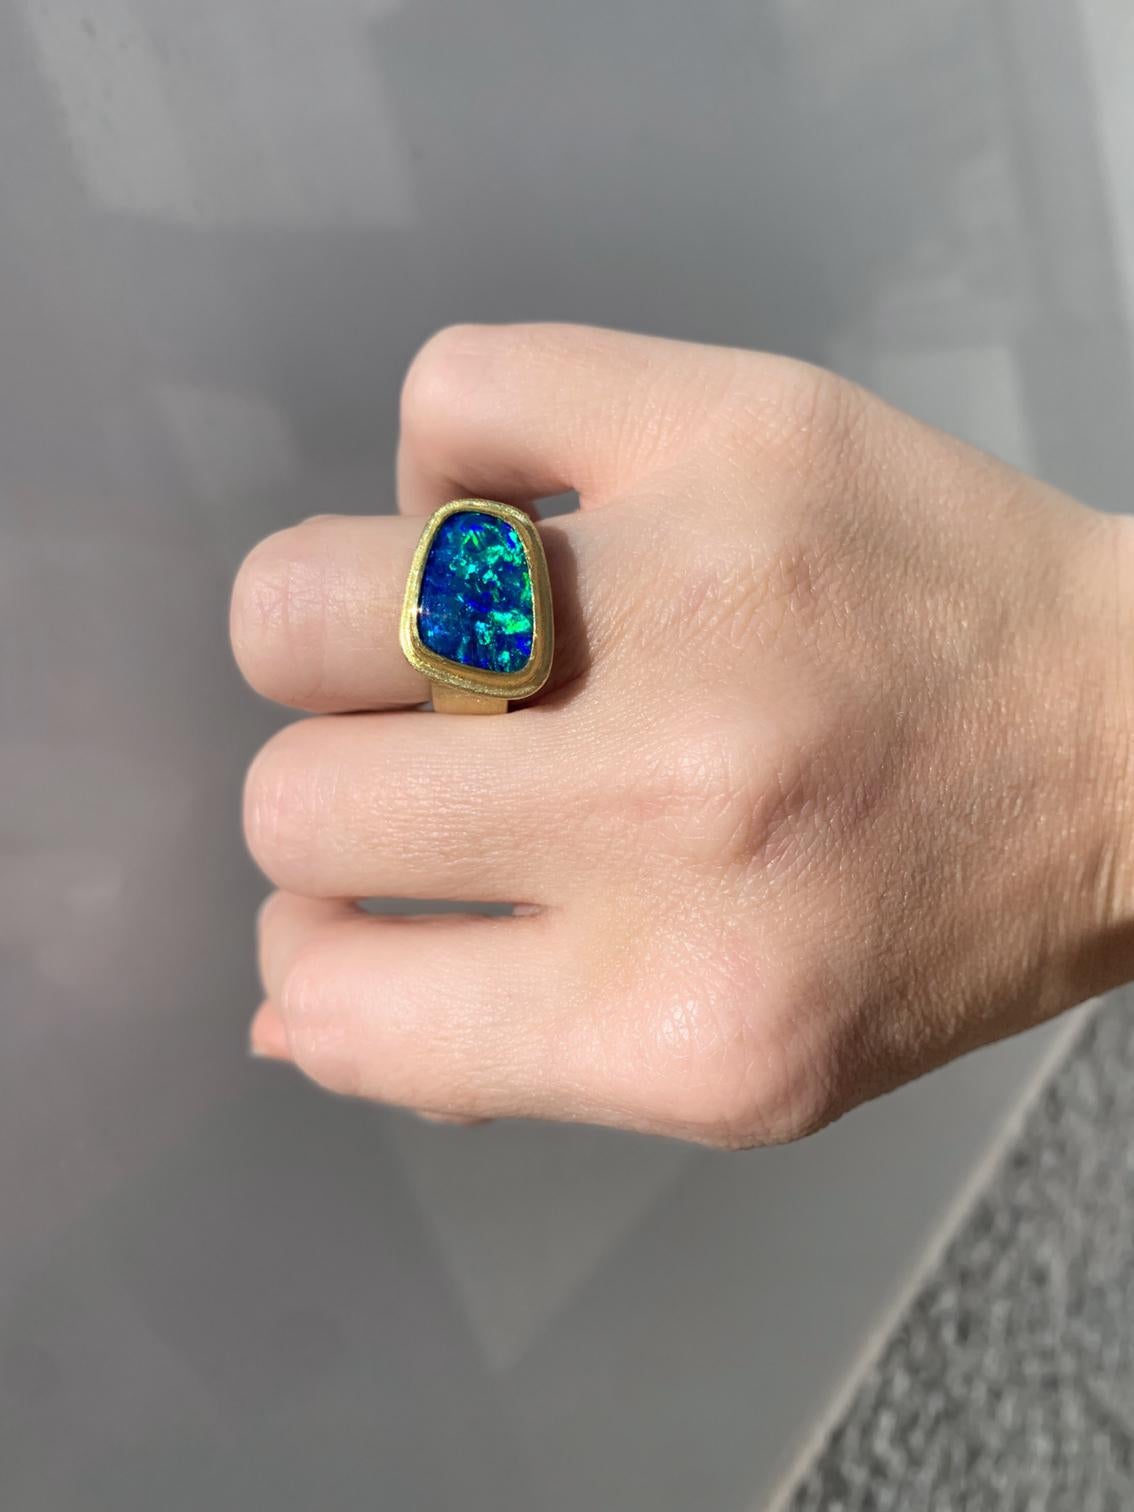 Doppelt gerahmter Ring, handgefertigt von der preisgekrönten Schmuckkünstlerin Petra Class, mit einem spektakulären, magischen, tiefblauen, massiven australischen Opal-Cabochon in freier Form mit außergewöhnlichem, elektrisierendem Farbenspiel,